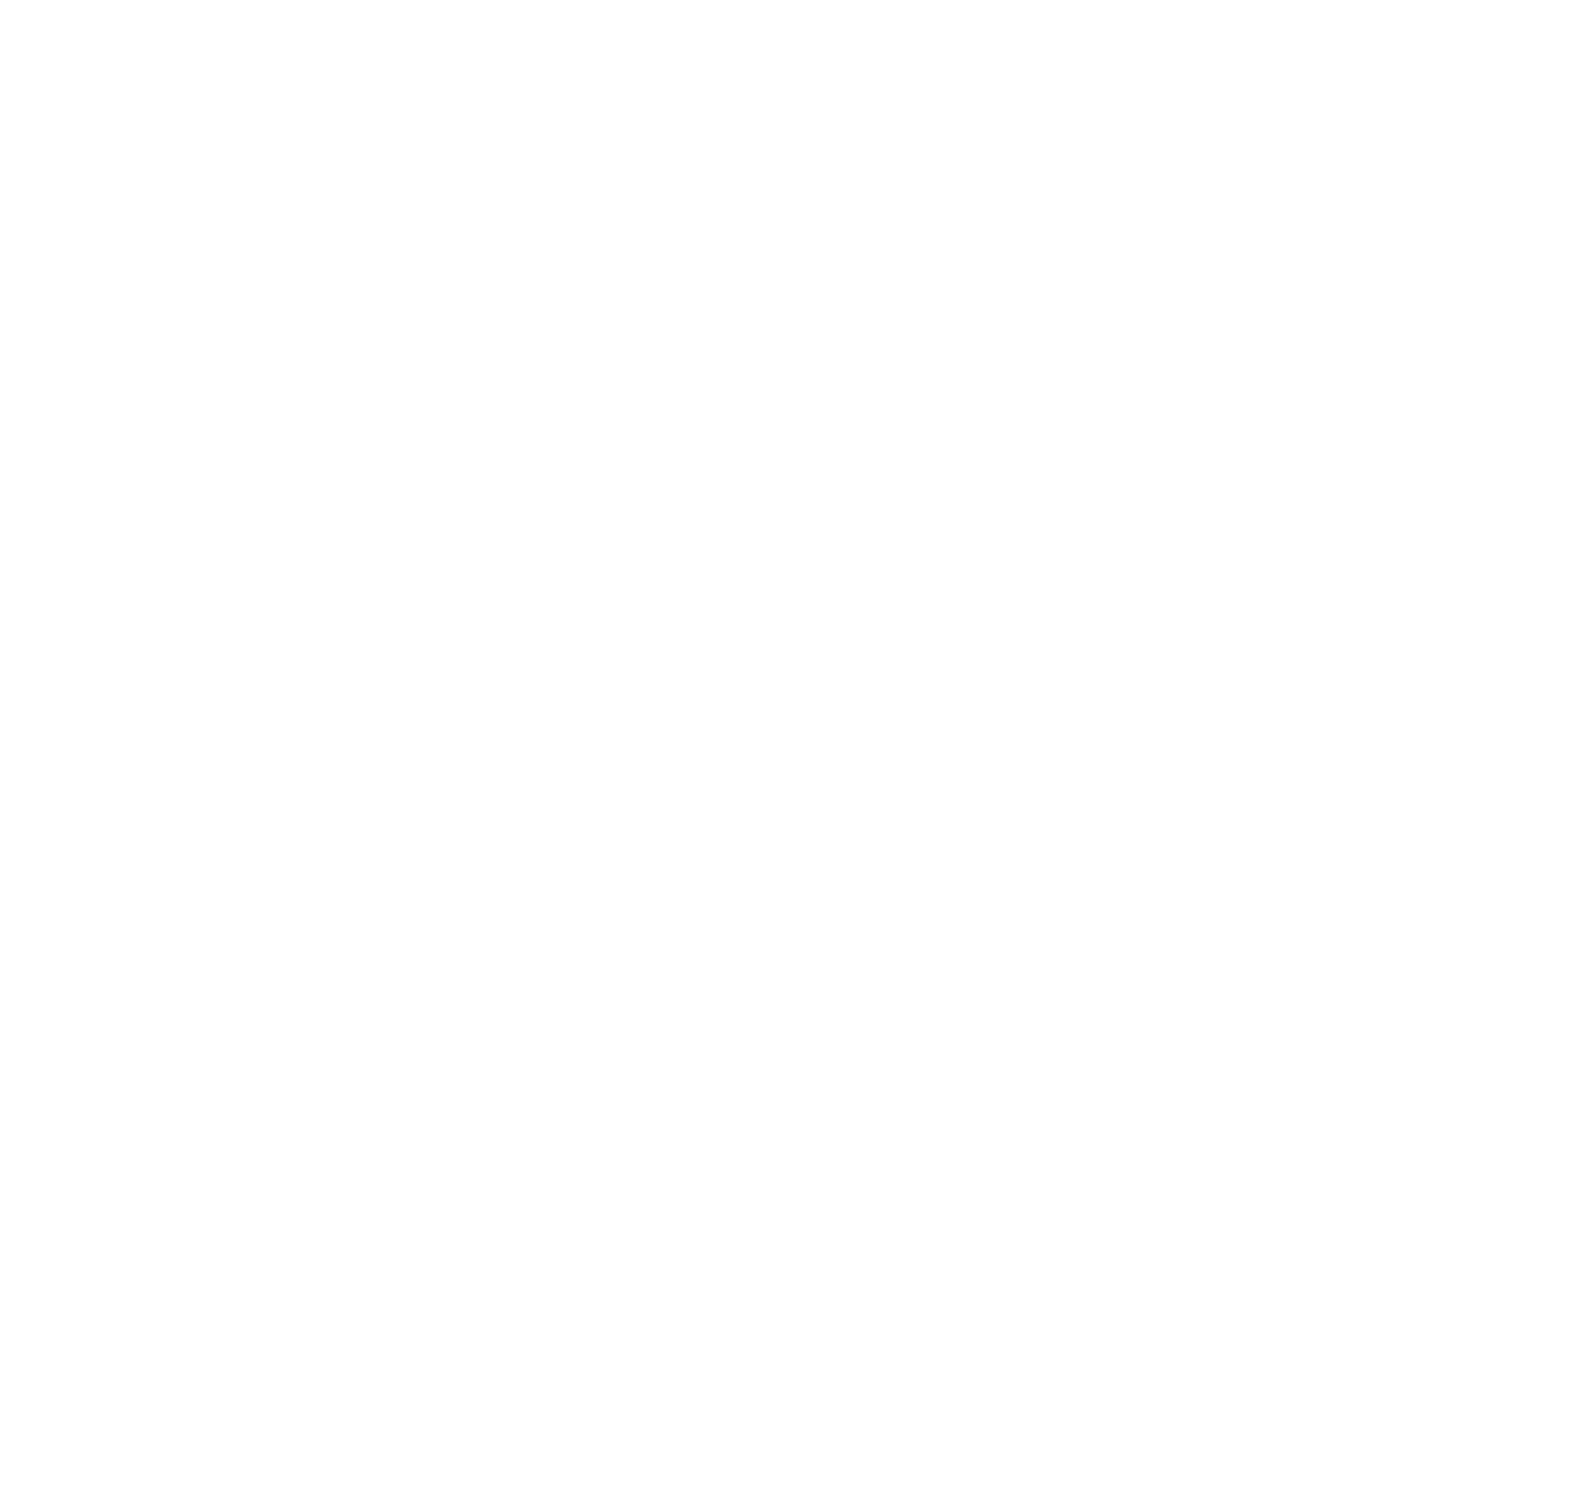 G-bits Network Technology  logo for dark backgrounds (transparent PNG)